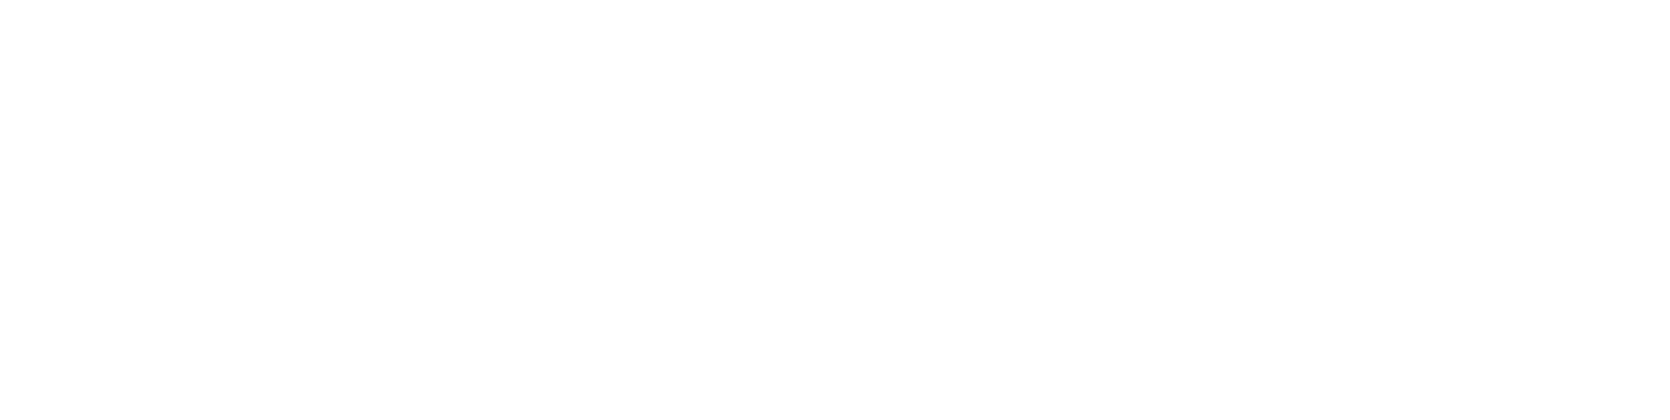 storiesonboard logo full white